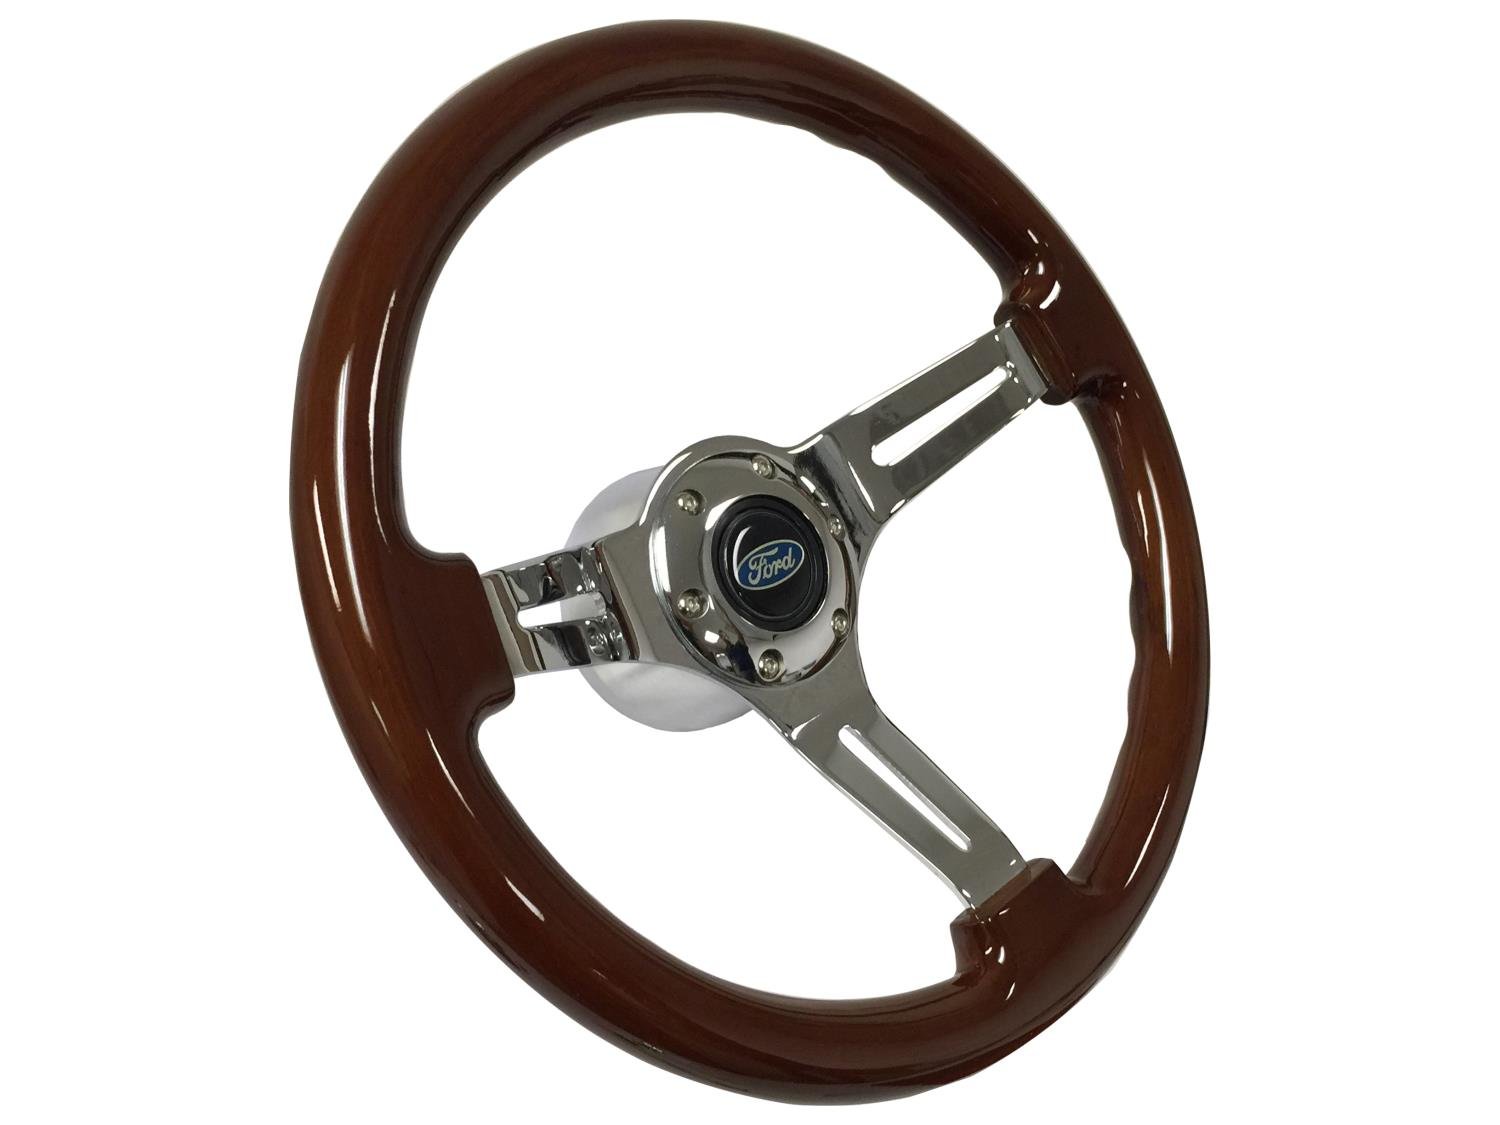 S6 Sport Steering Wheel Kit for 1968-1973 Ford/Mercury,